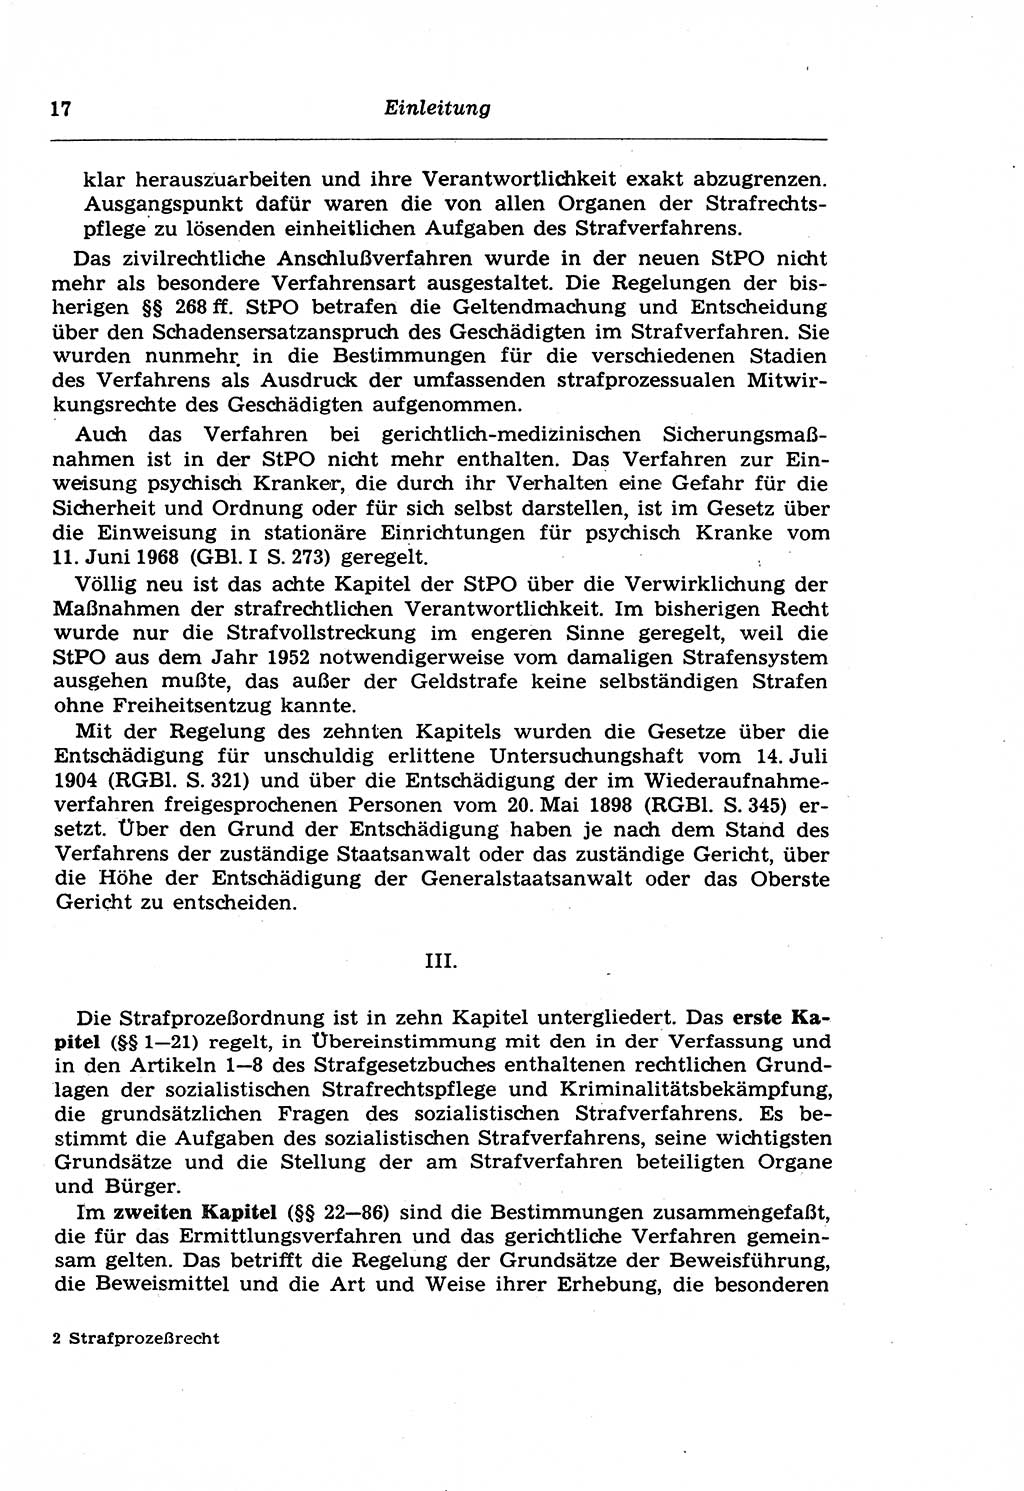 Strafprozeßrecht der DDR (Deutsche Demokratische Republik), Lehrkommentar zur Strafprozeßordnung (StPO) 1968, Seite 17 (Strafprozeßr. DDR Lehrkomm. StPO 19688, S. 17)